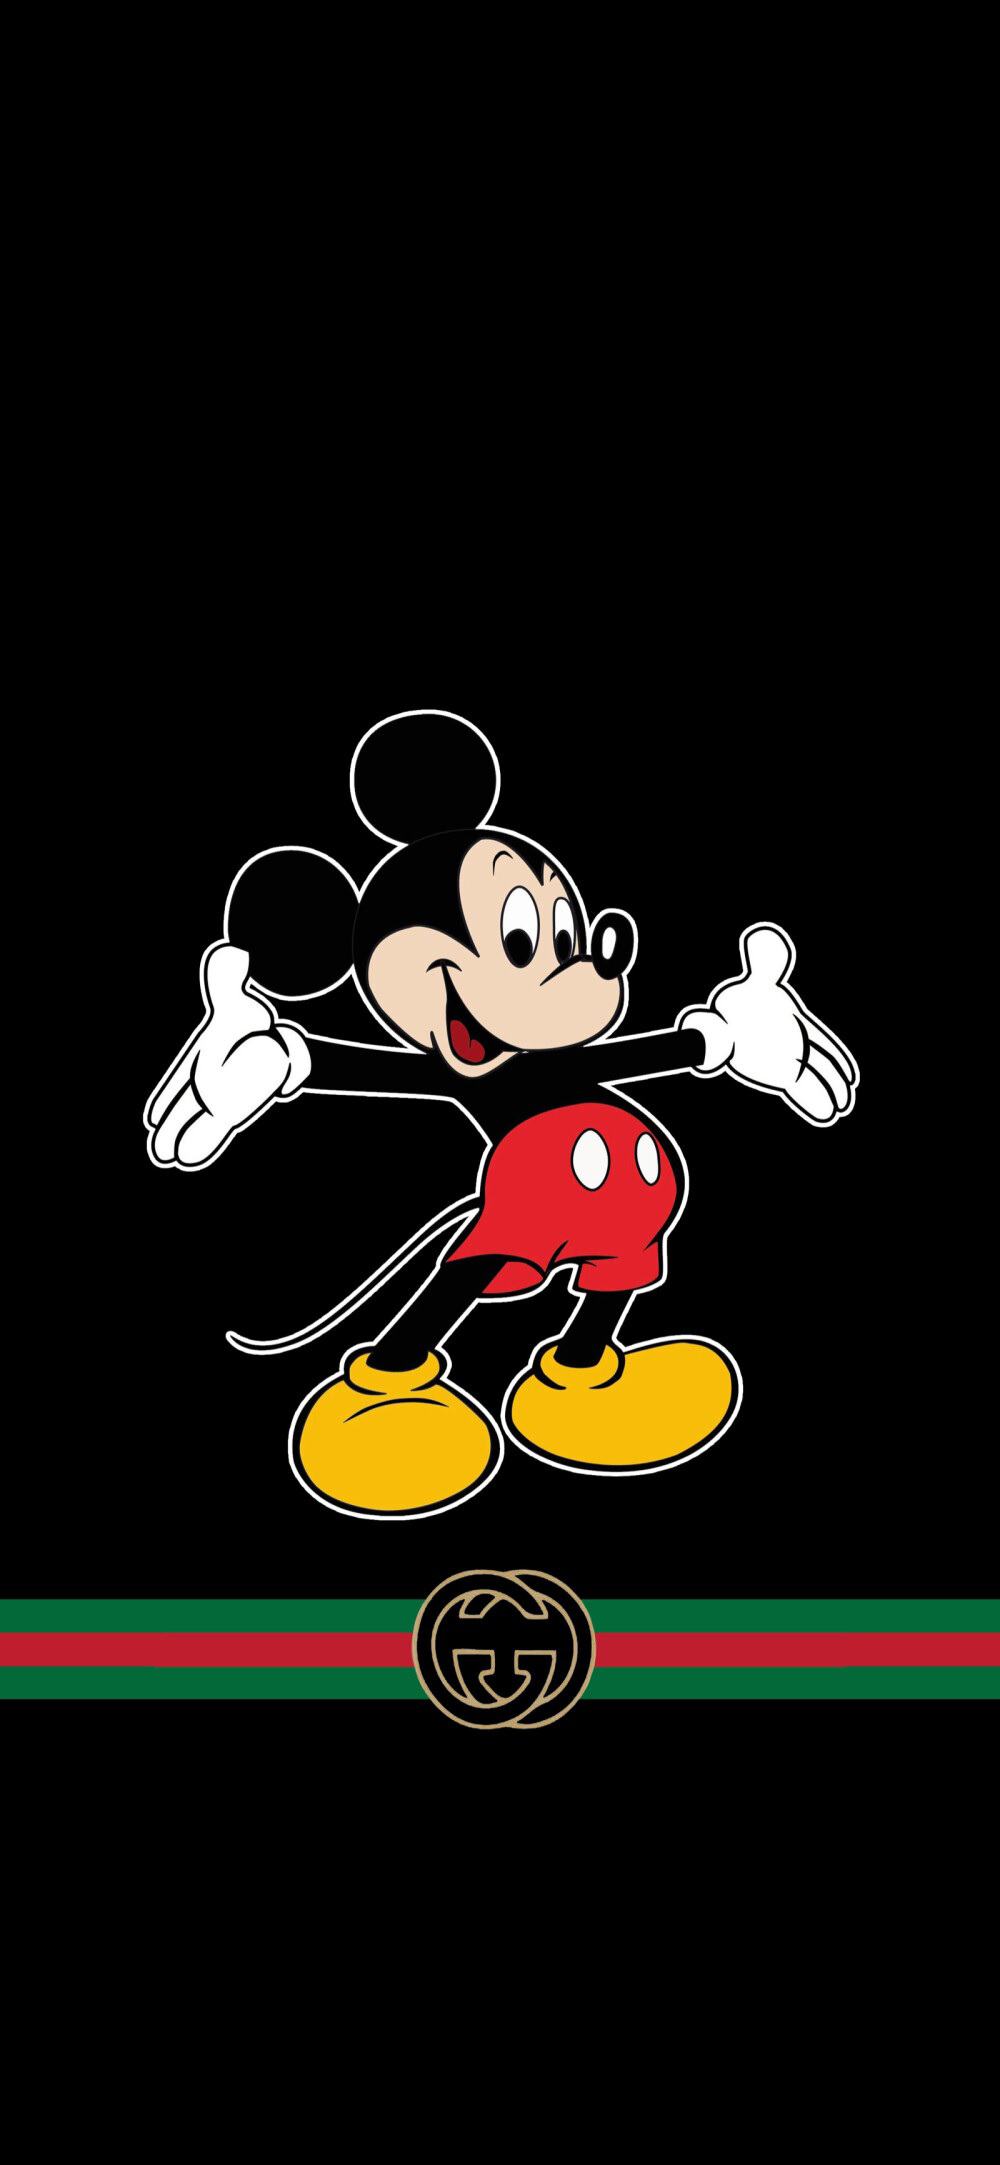 Hình ảnh đẹp của Gucci Mickey trên nền đen